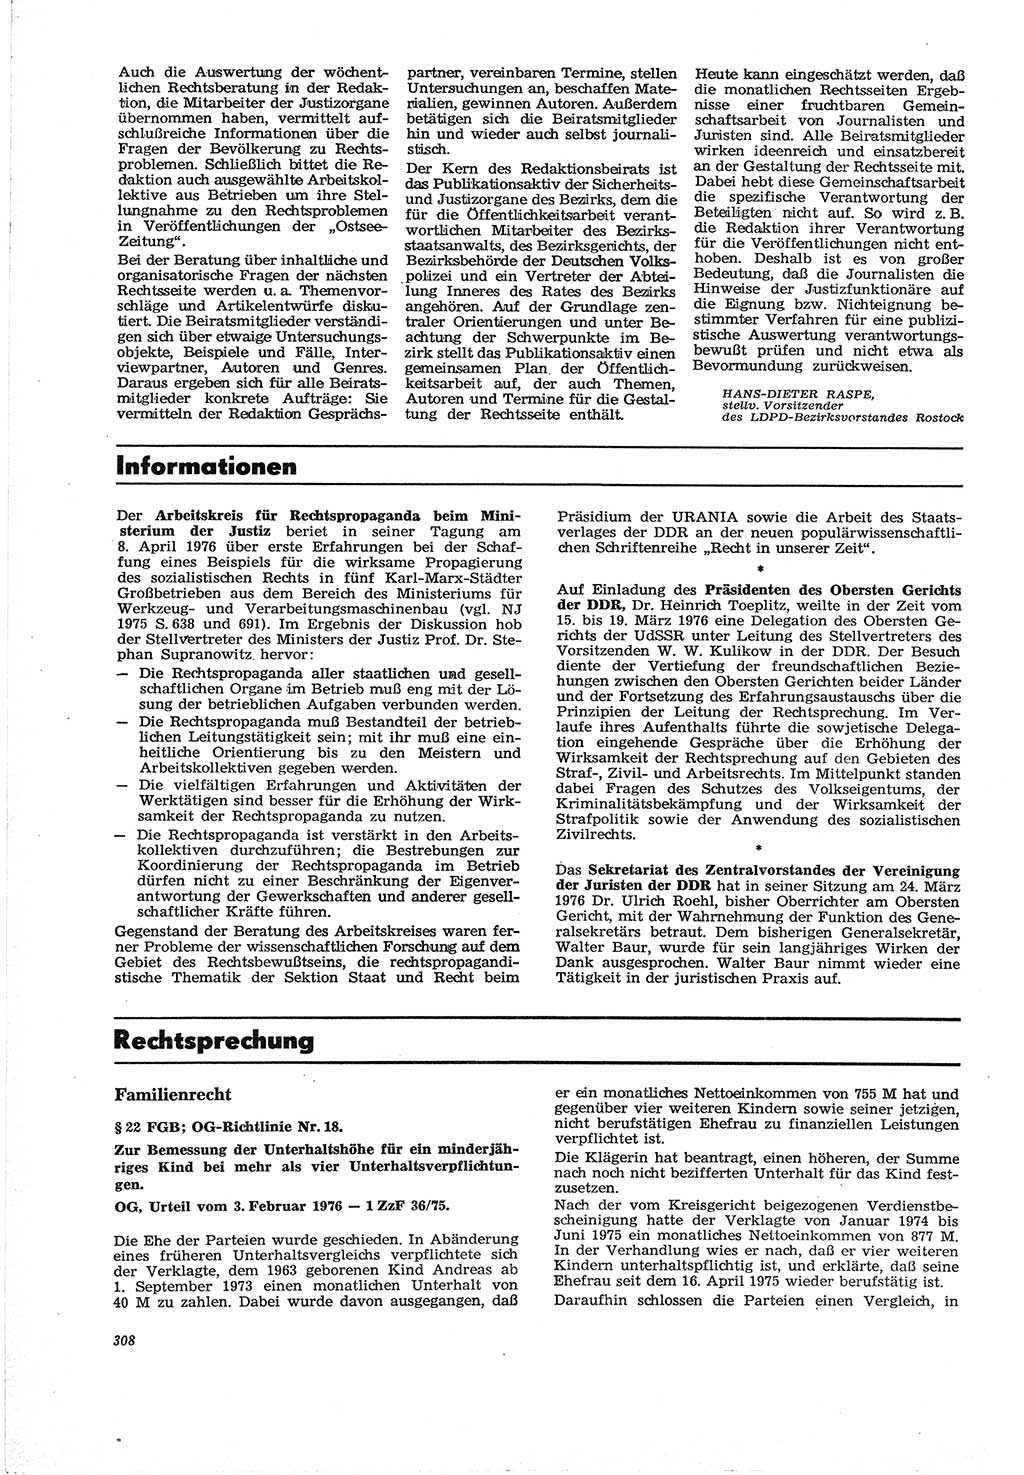 Neue Justiz (NJ), Zeitschrift für Recht und Rechtswissenschaft [Deutsche Demokratische Republik (DDR)], 30. Jahrgang 1976, Seite 308 (NJ DDR 1976, S. 308)